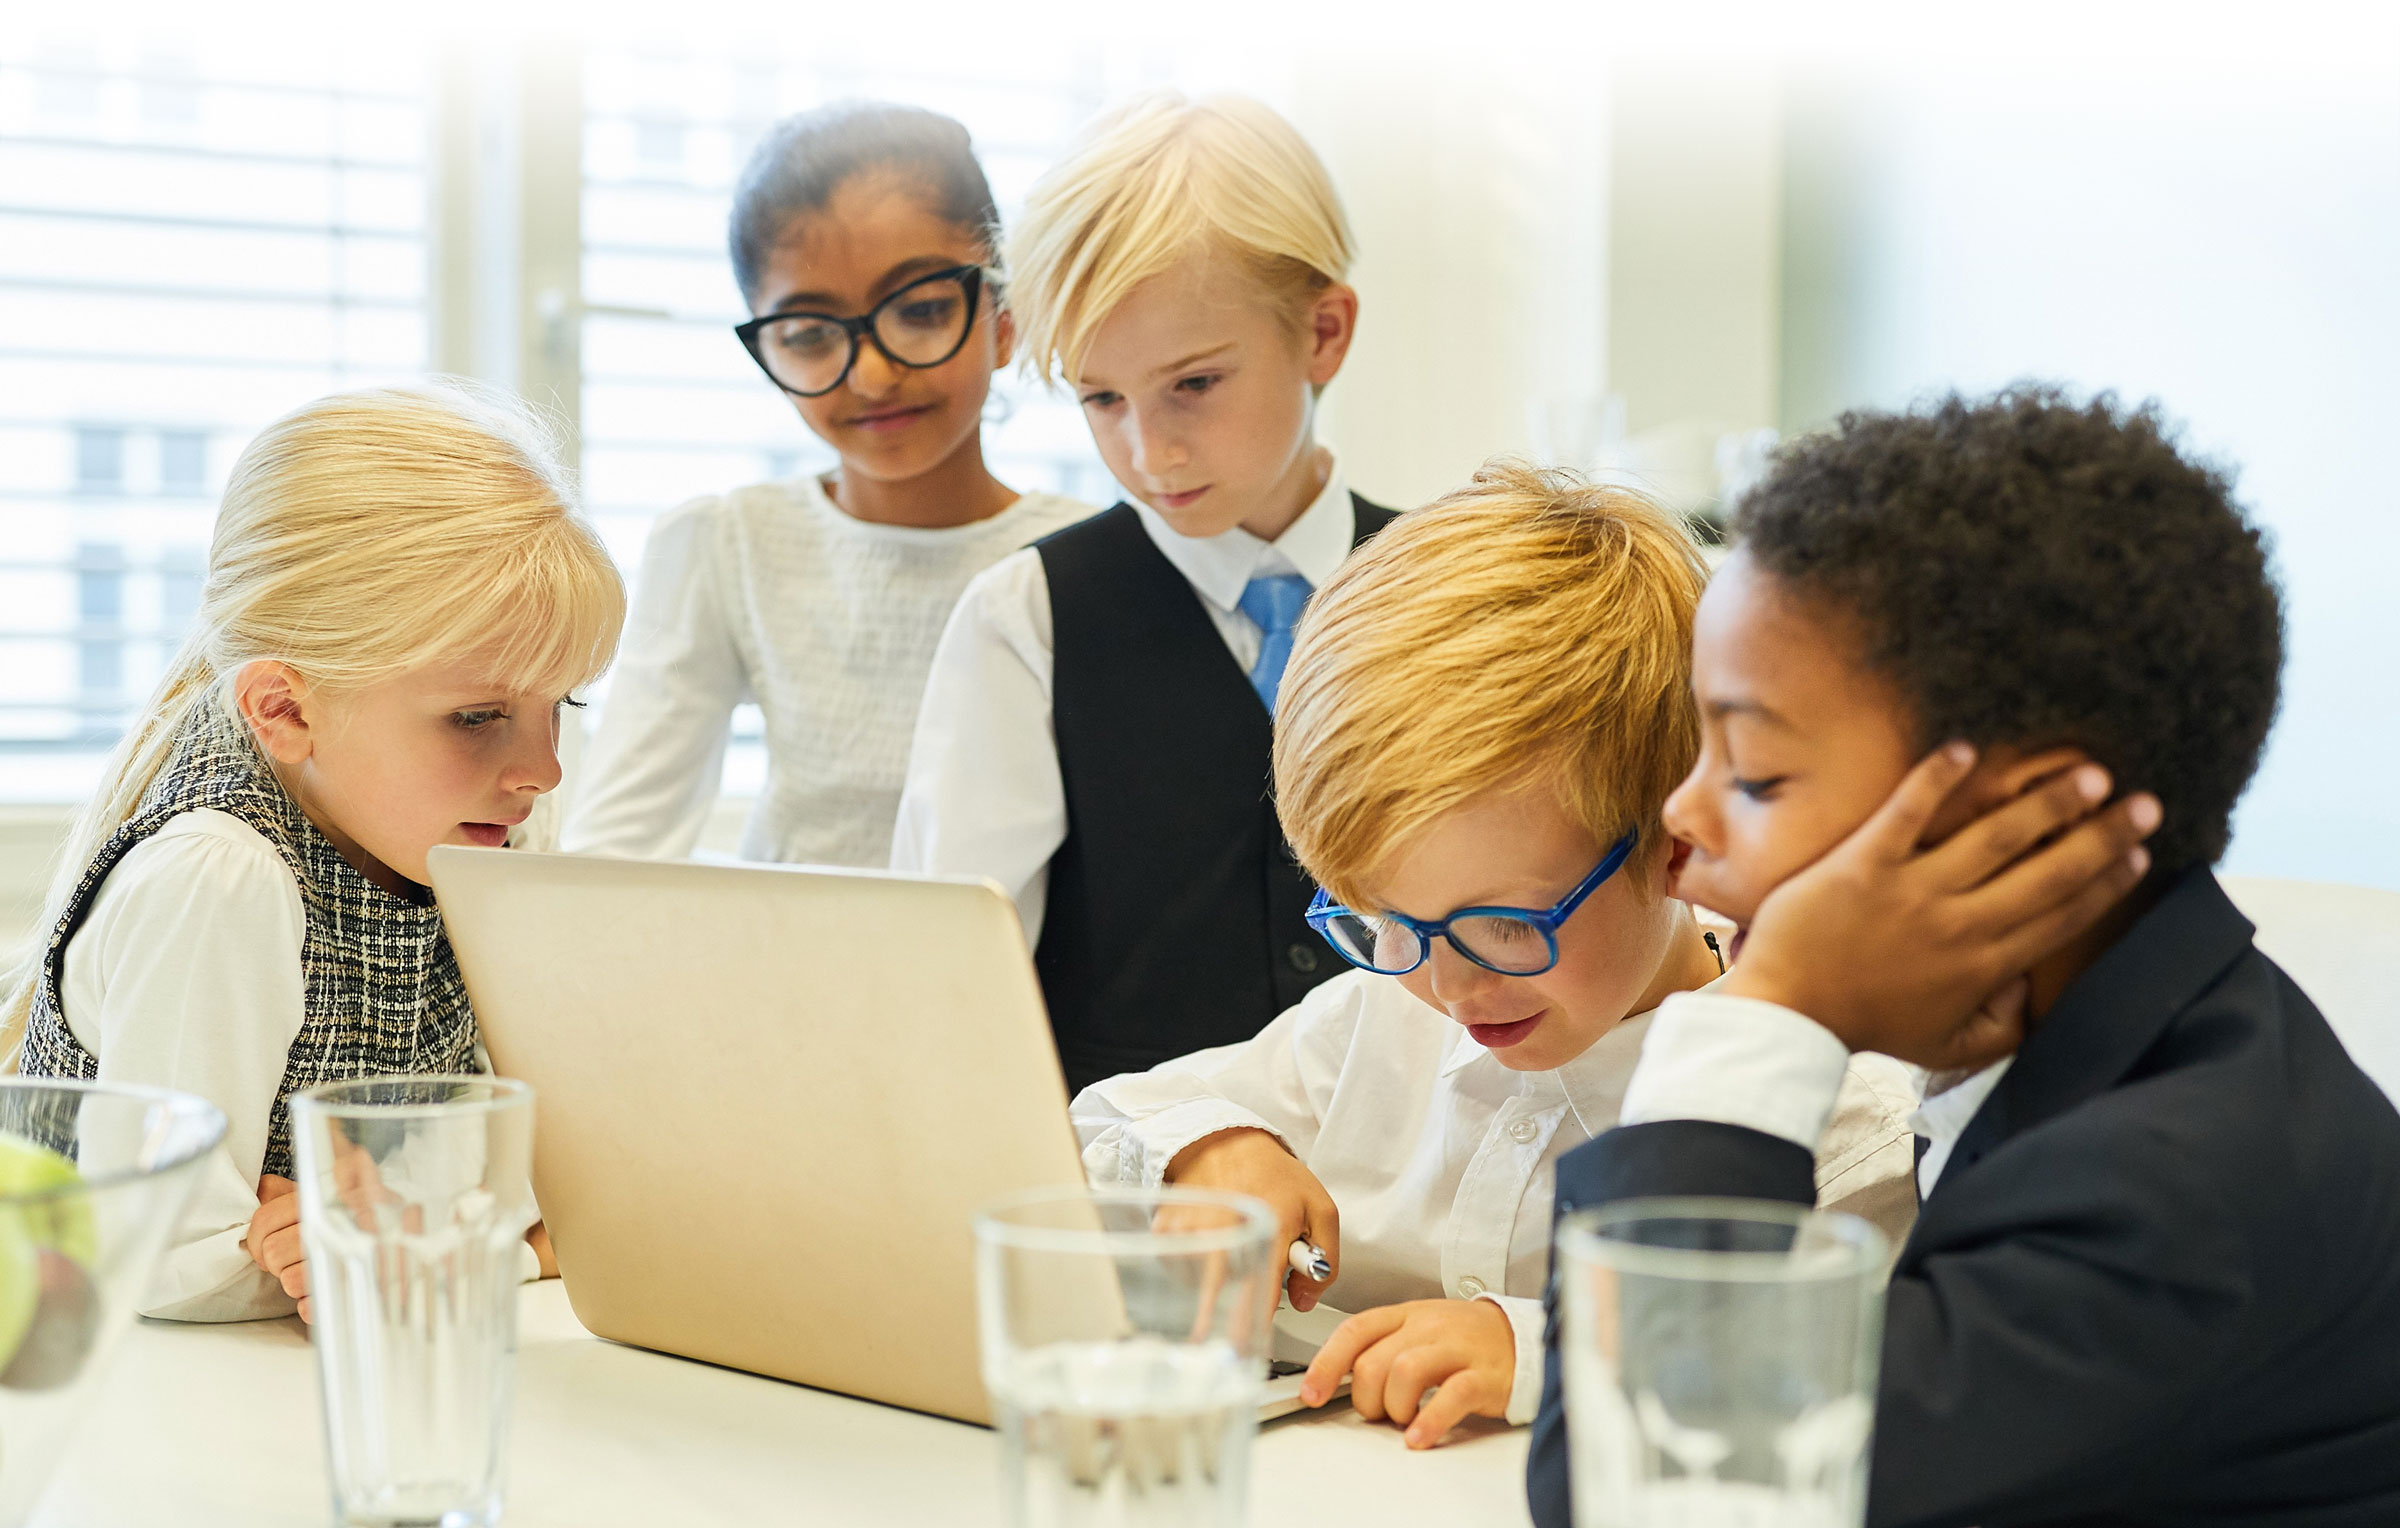 Children in business attire in meeting around laptop